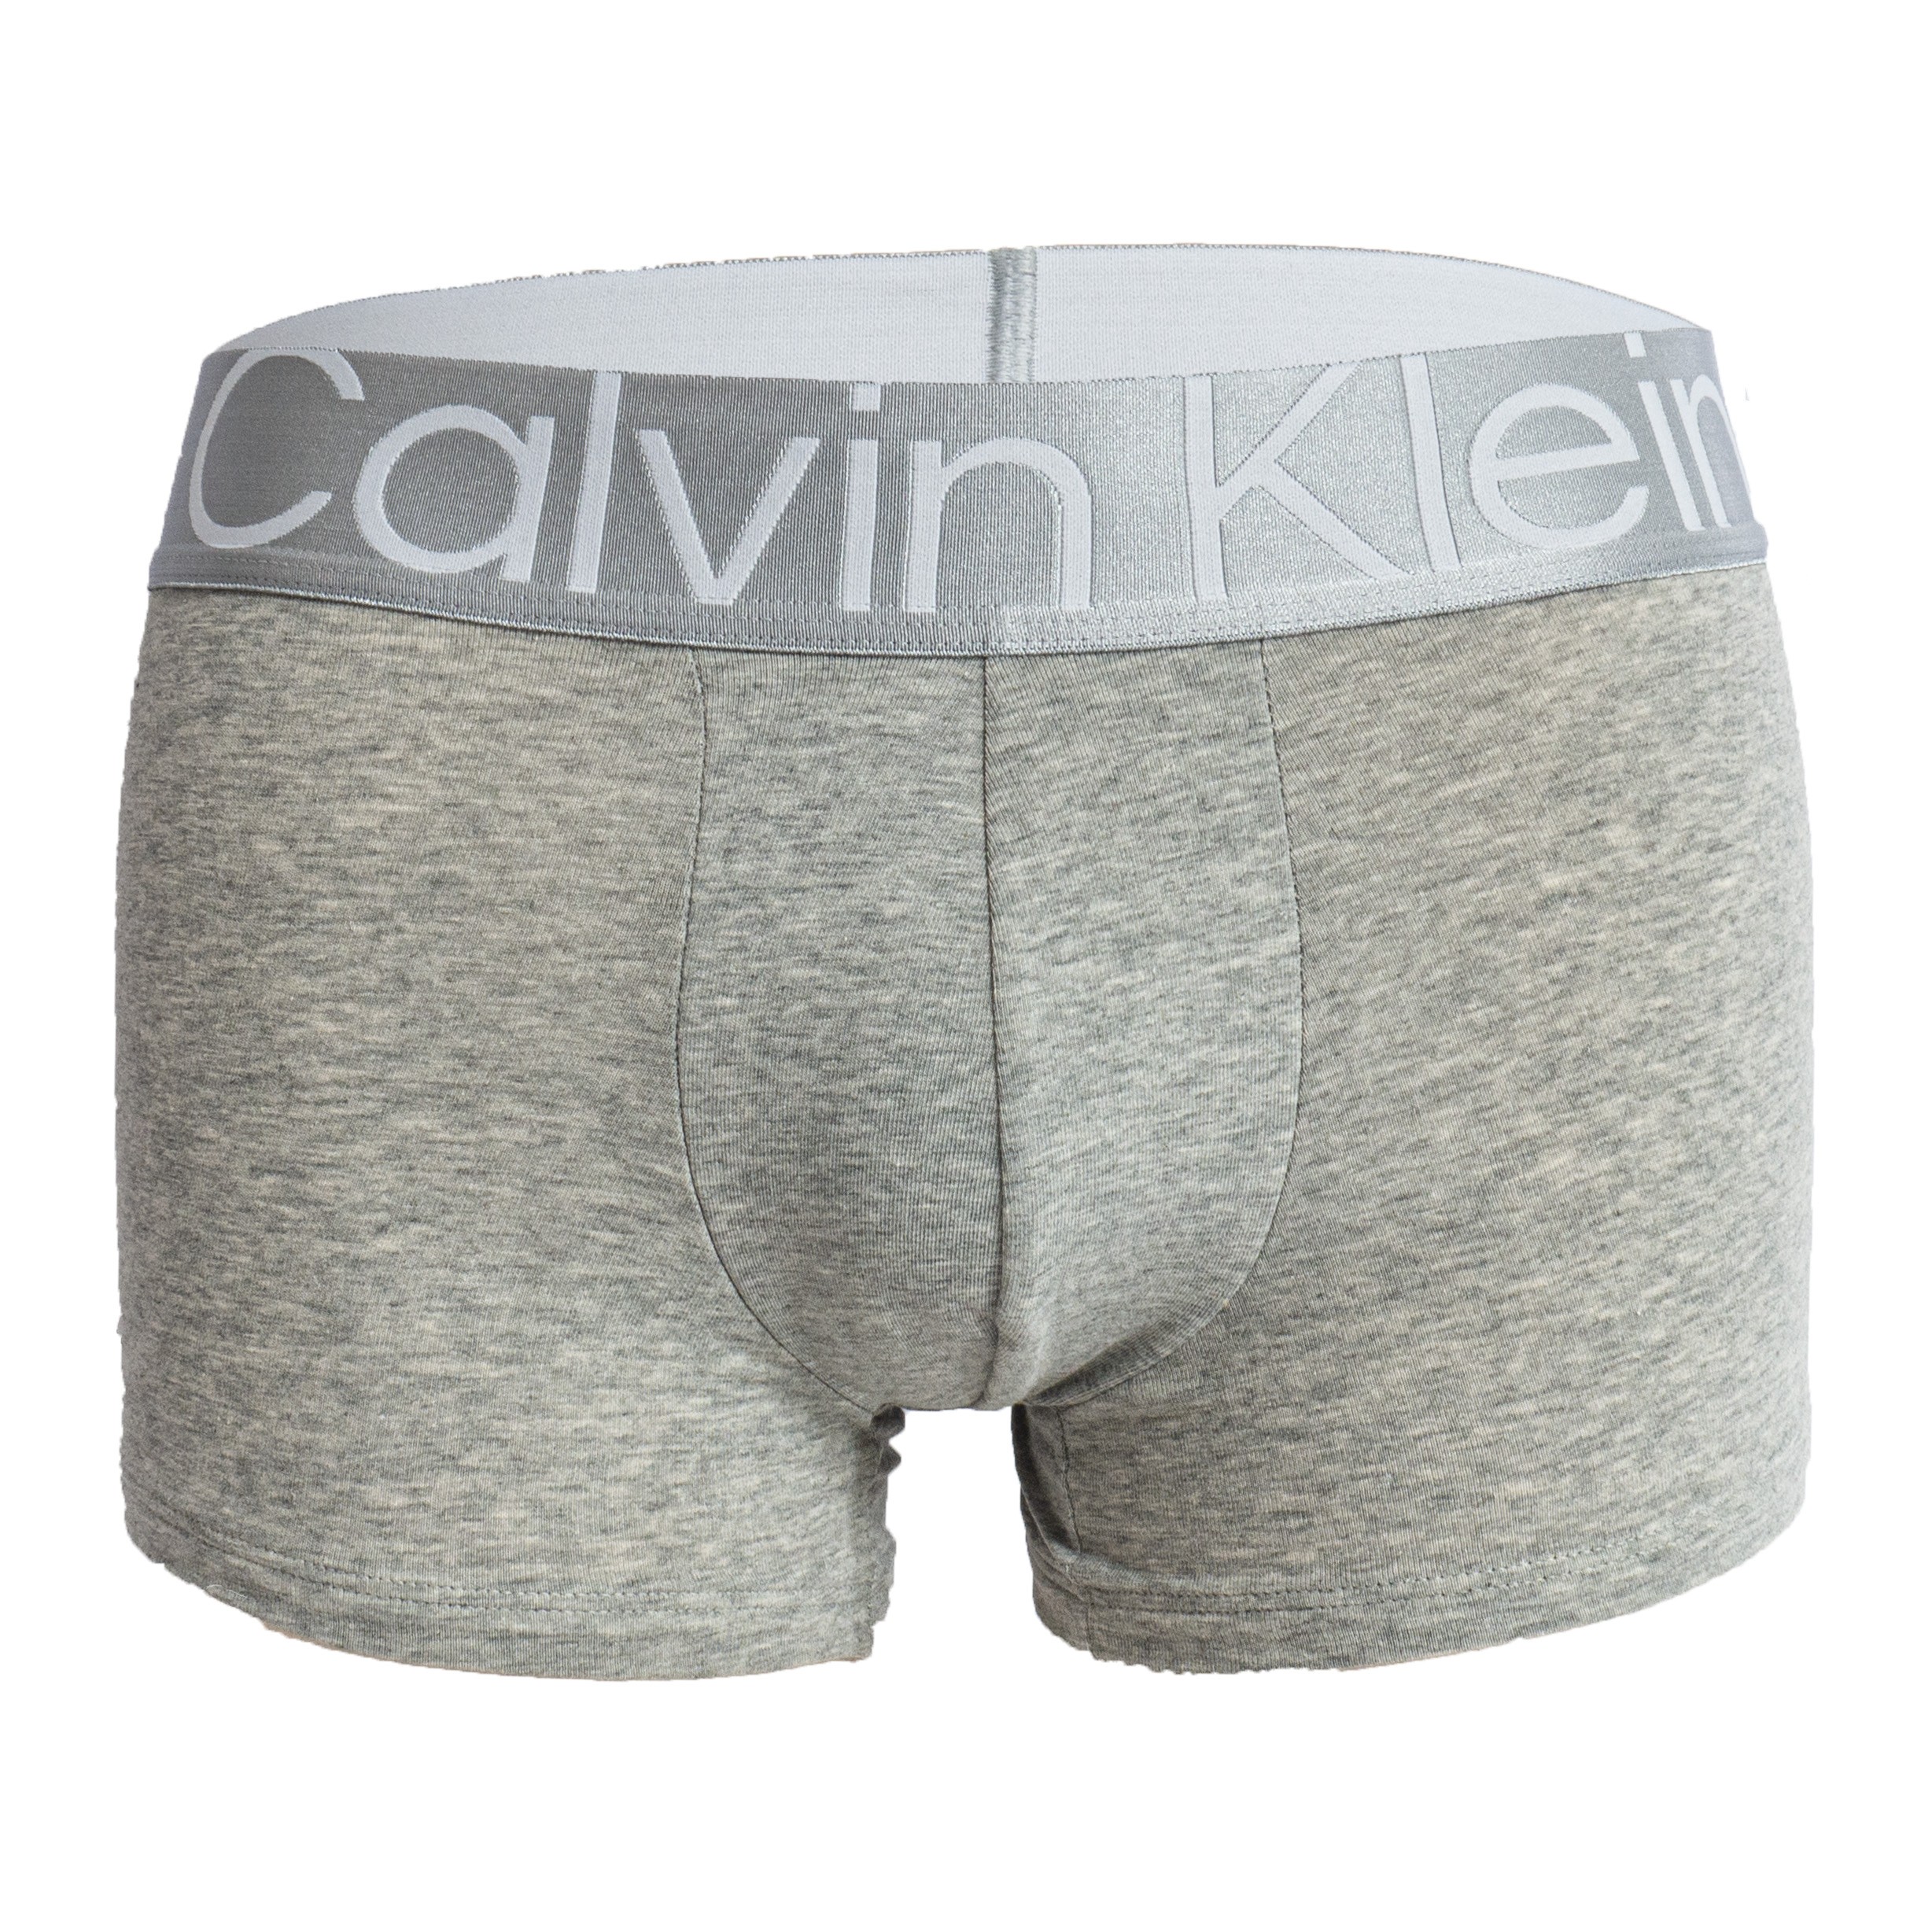 Calvin klein Calvin klein boxer nb3130a pk3 blk/wht/grey HOMBRE